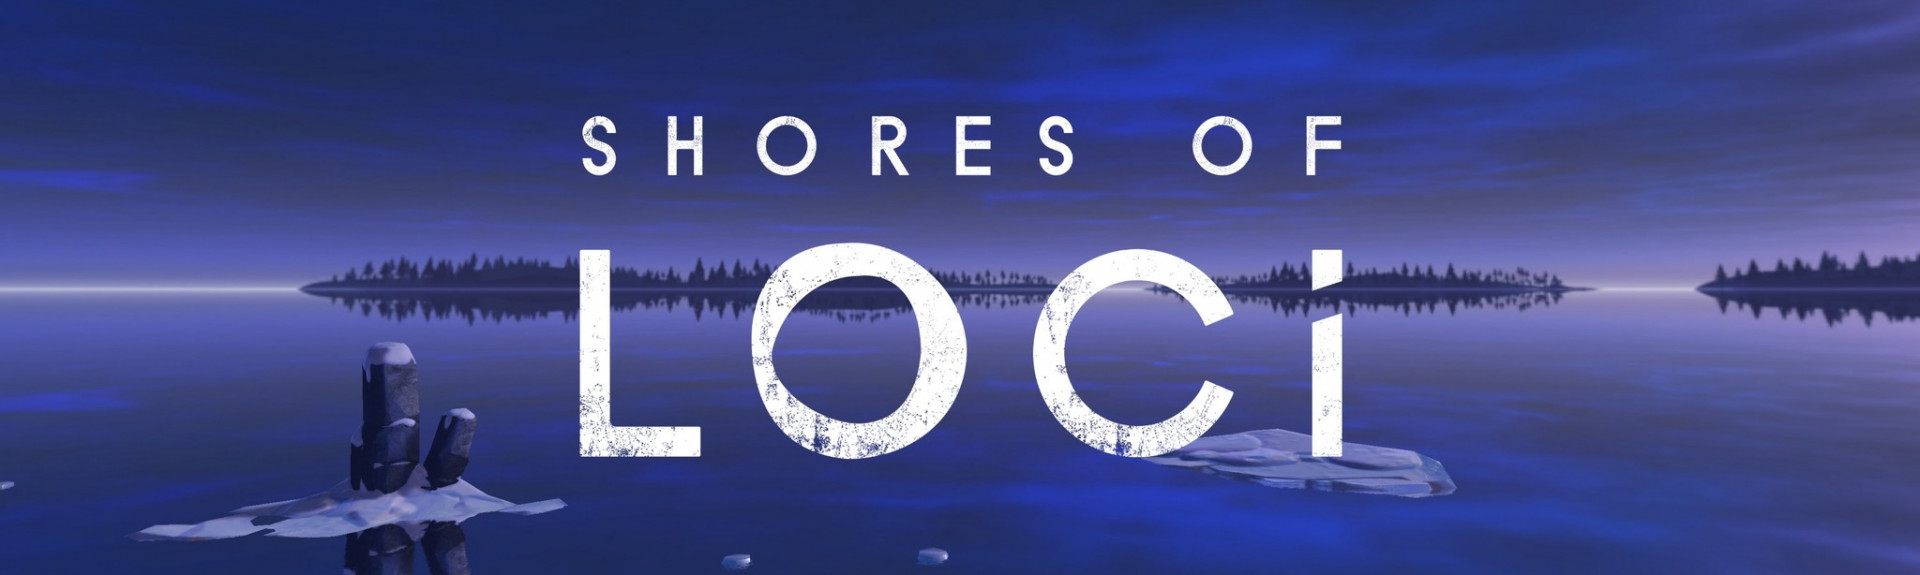 Shores of Loci